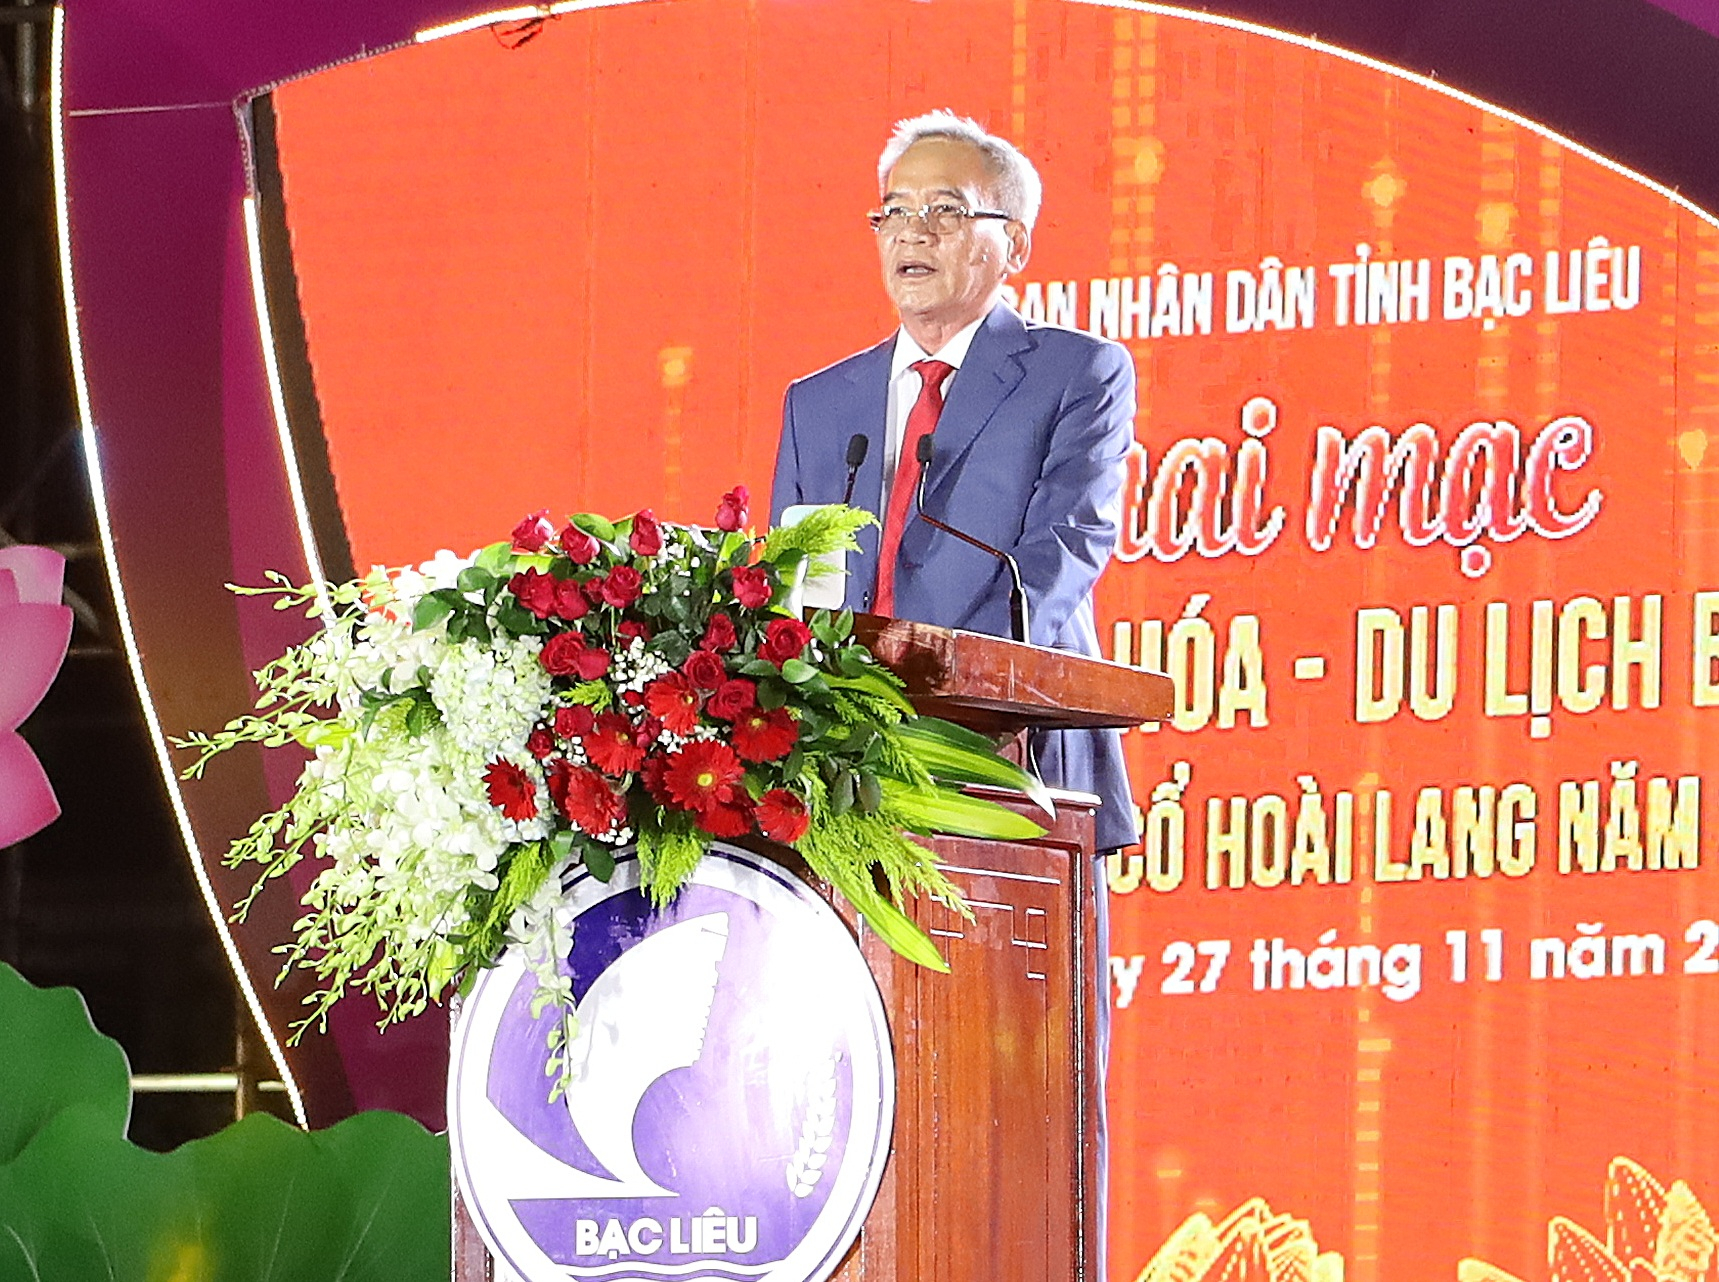 Ông Lữ Văn Hùng - Bí thư Tỉnh ủy Bạc Liêu phát biểu khai mạc.